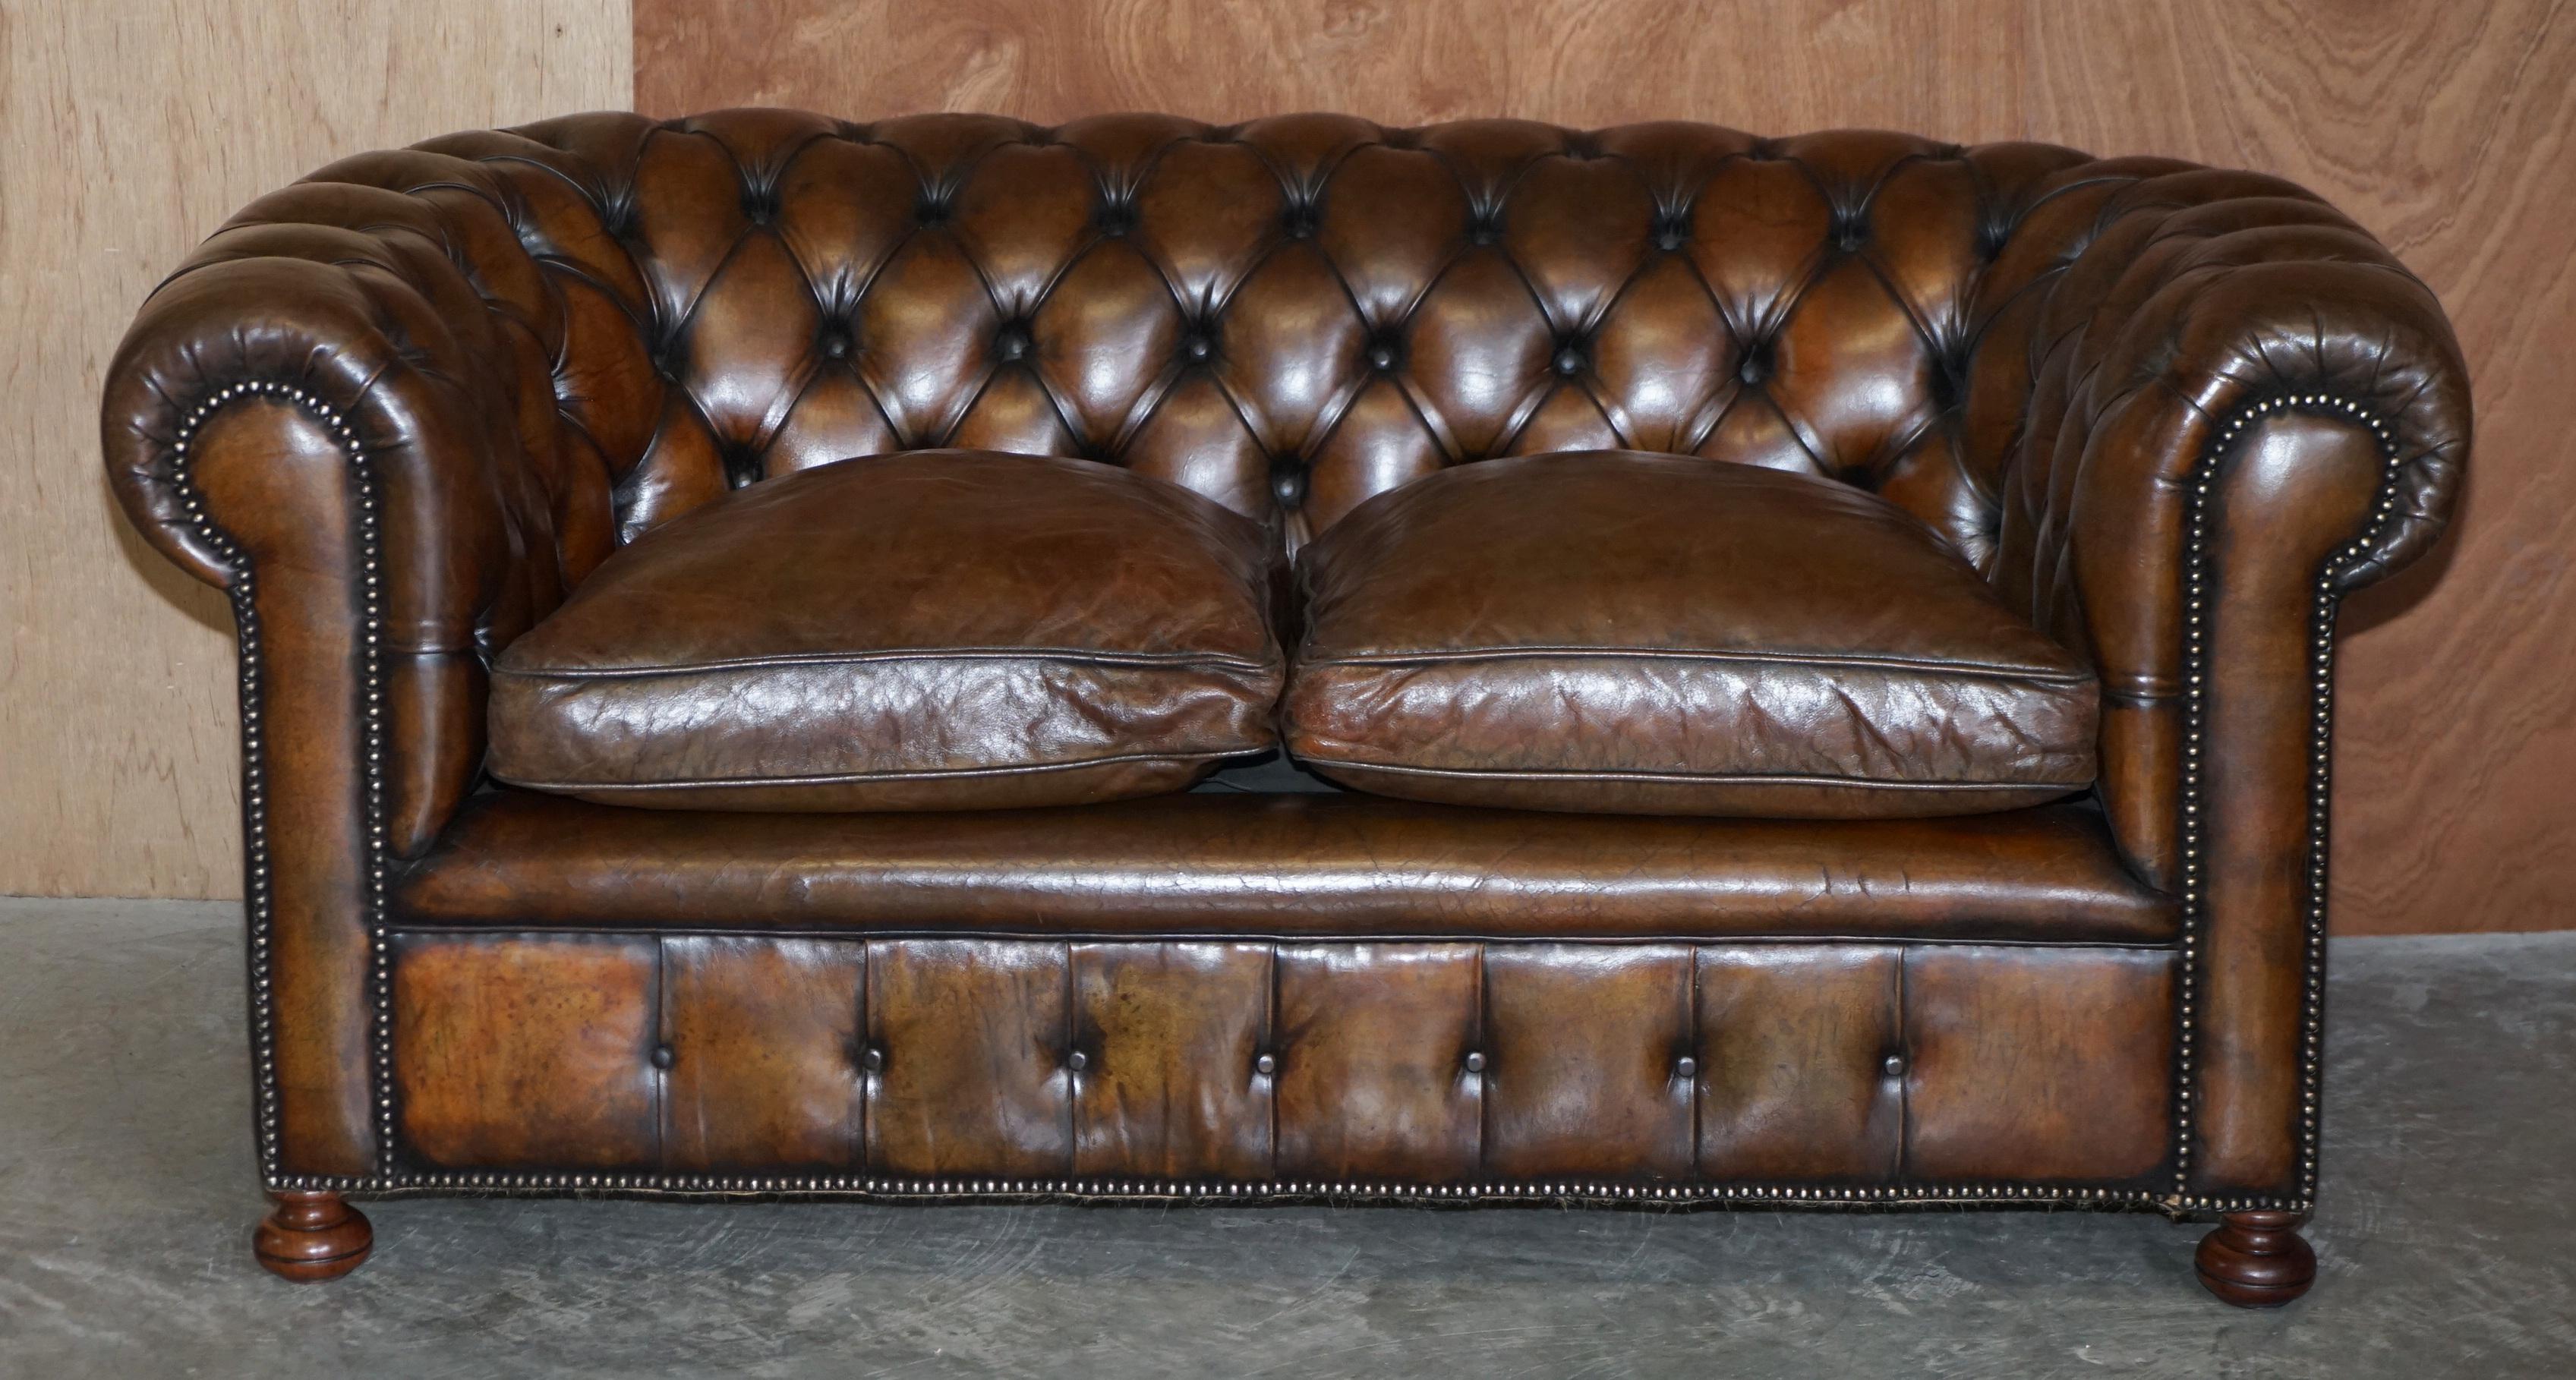 Nous sommes ravis d'offrir à la vente ce canapé club Chesterfield en cuir brun cigare, exceptionnellement rare et d'origine vers 1900, en état restauré, avec des coussins remplis de plumes et des pieds en chignon en noyer tournés à la main sur